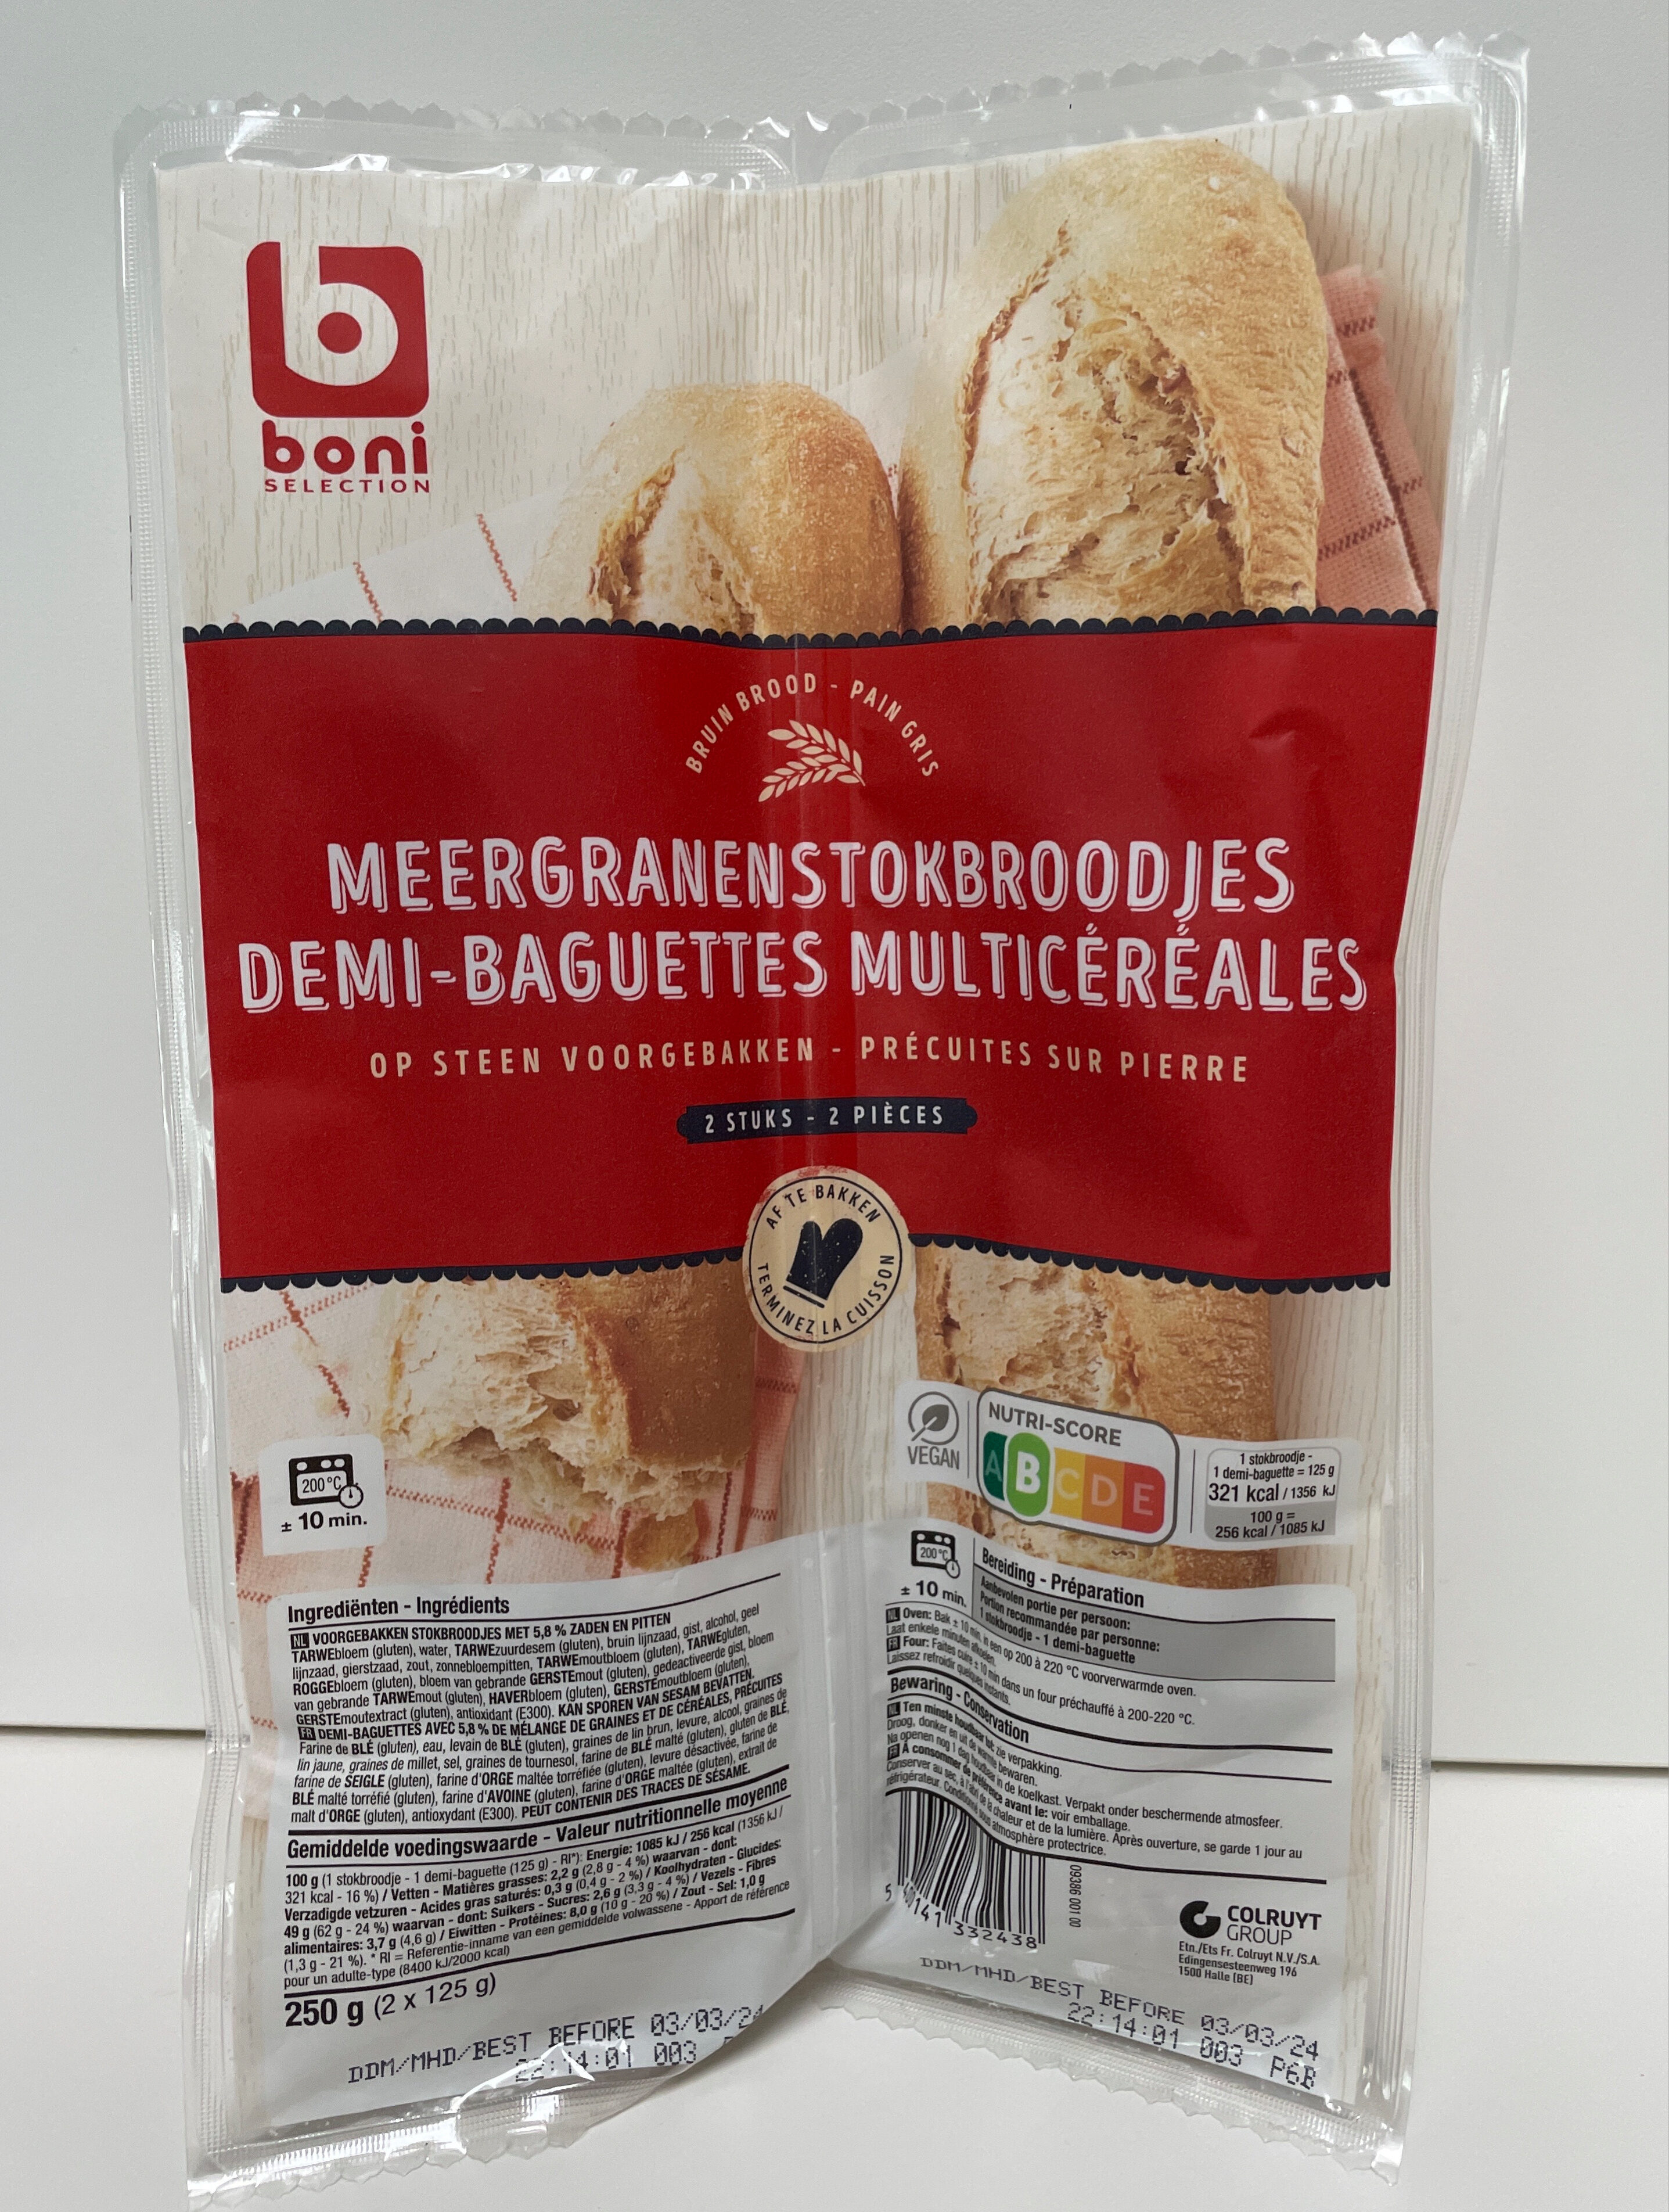 Demi-baguettes multicéréales - Product - nl